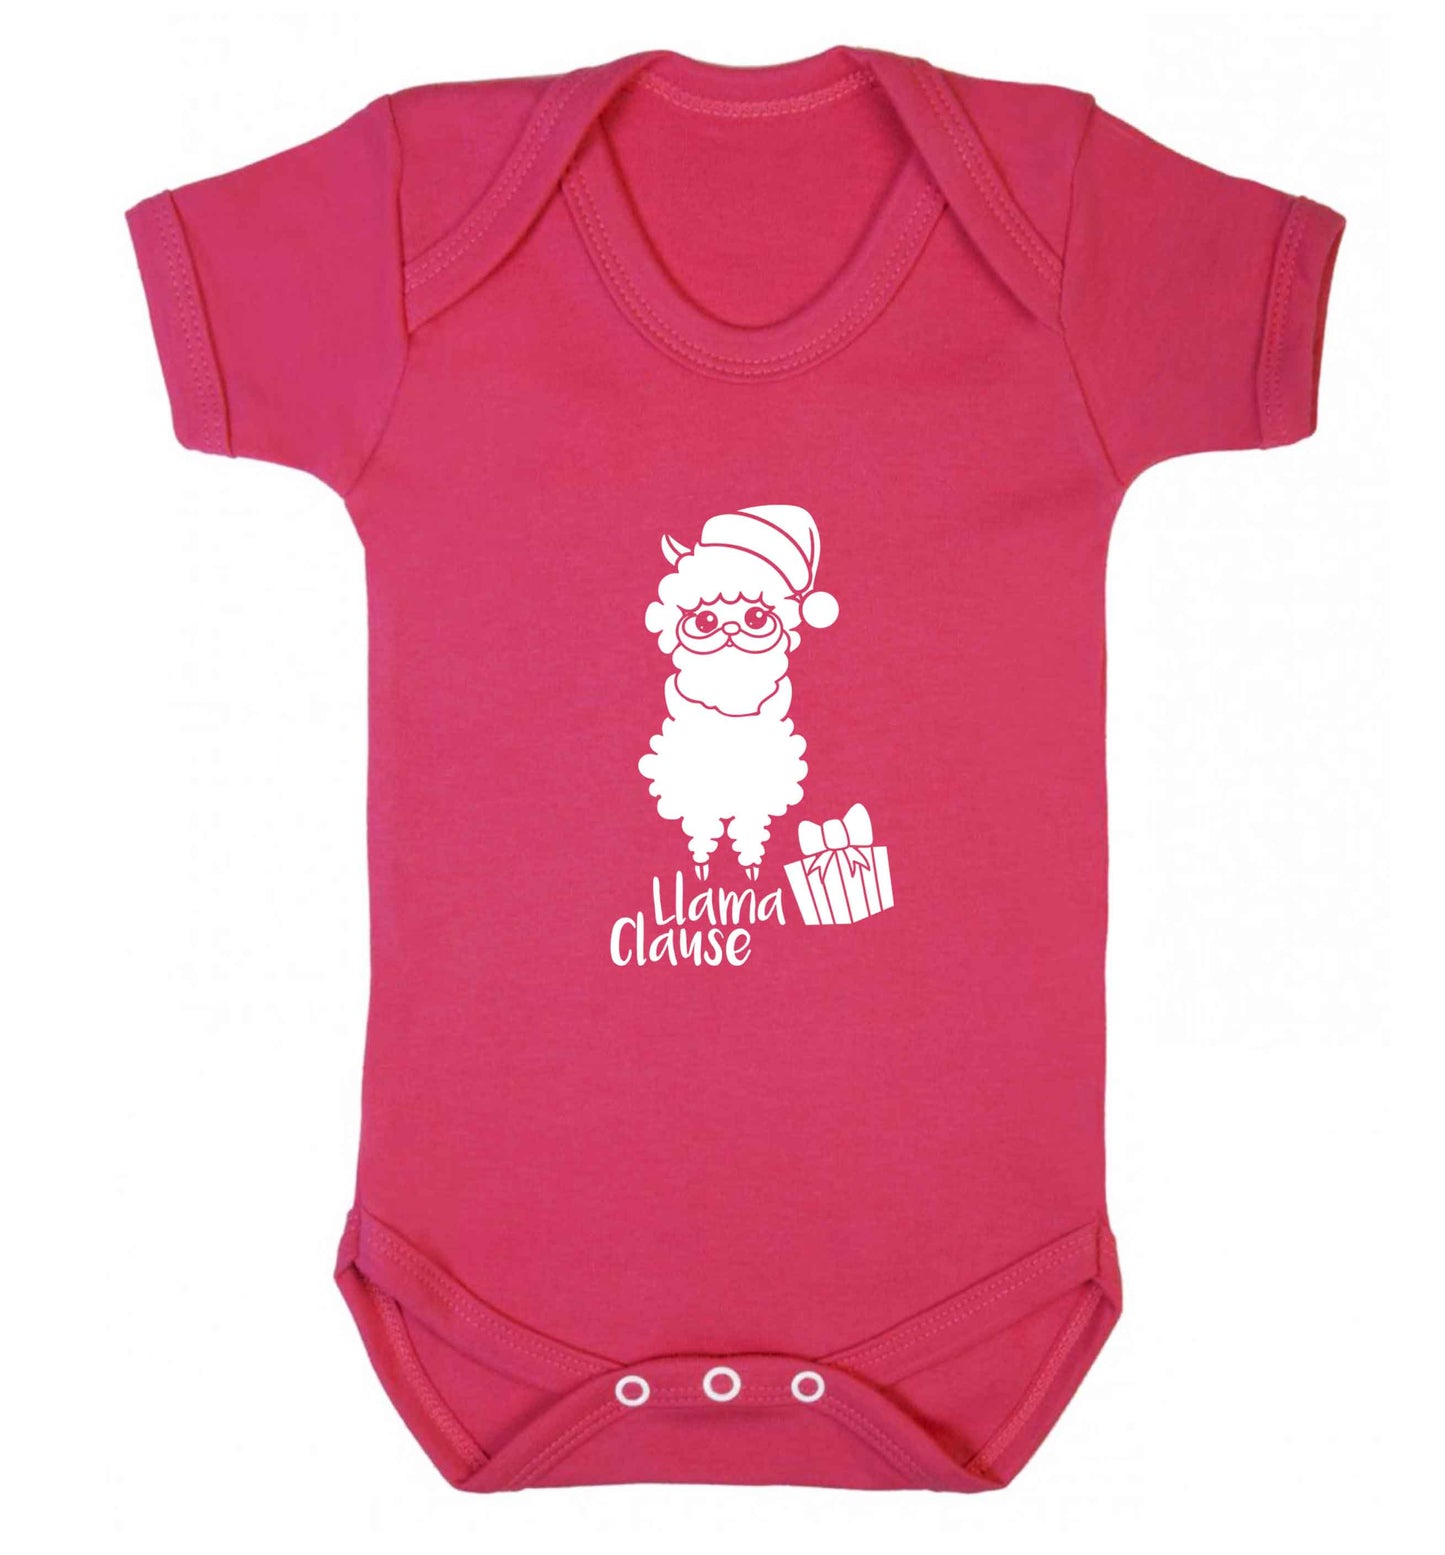 Llama Clause baby vest dark pink 18-24 months